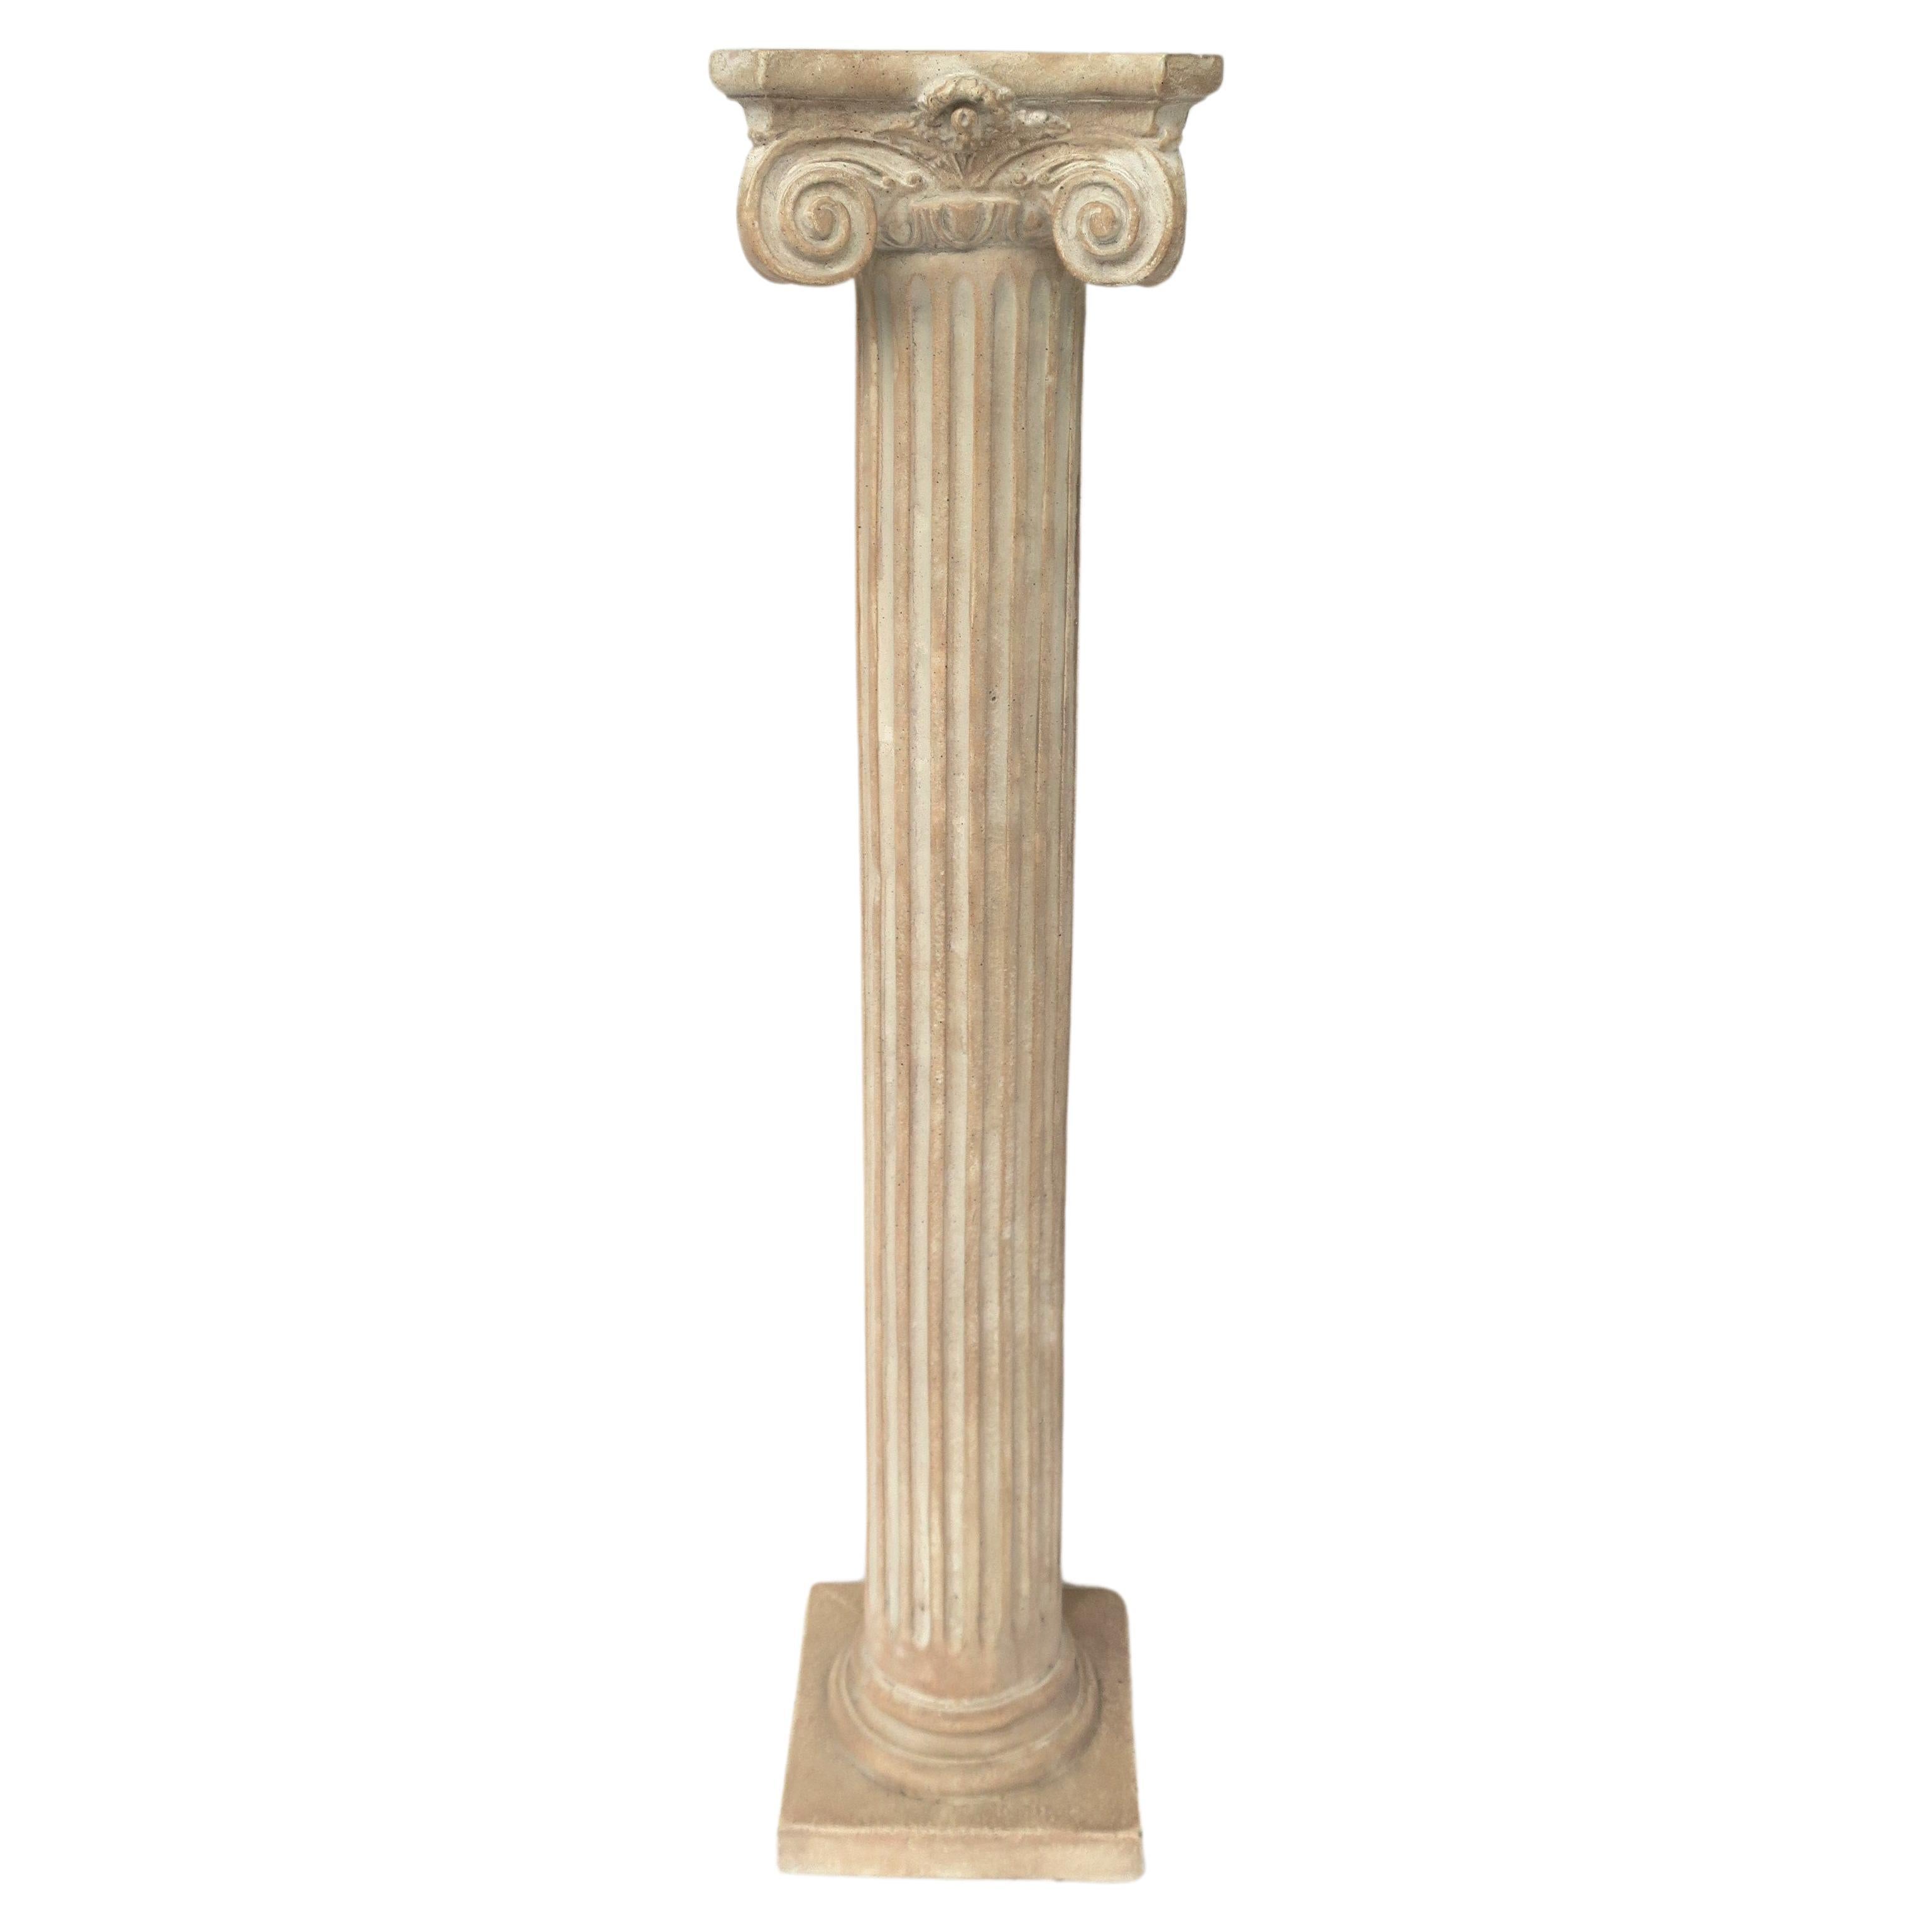 Säule The Pedestal Pillar Stand Ionic Form Neoklassischen Stil